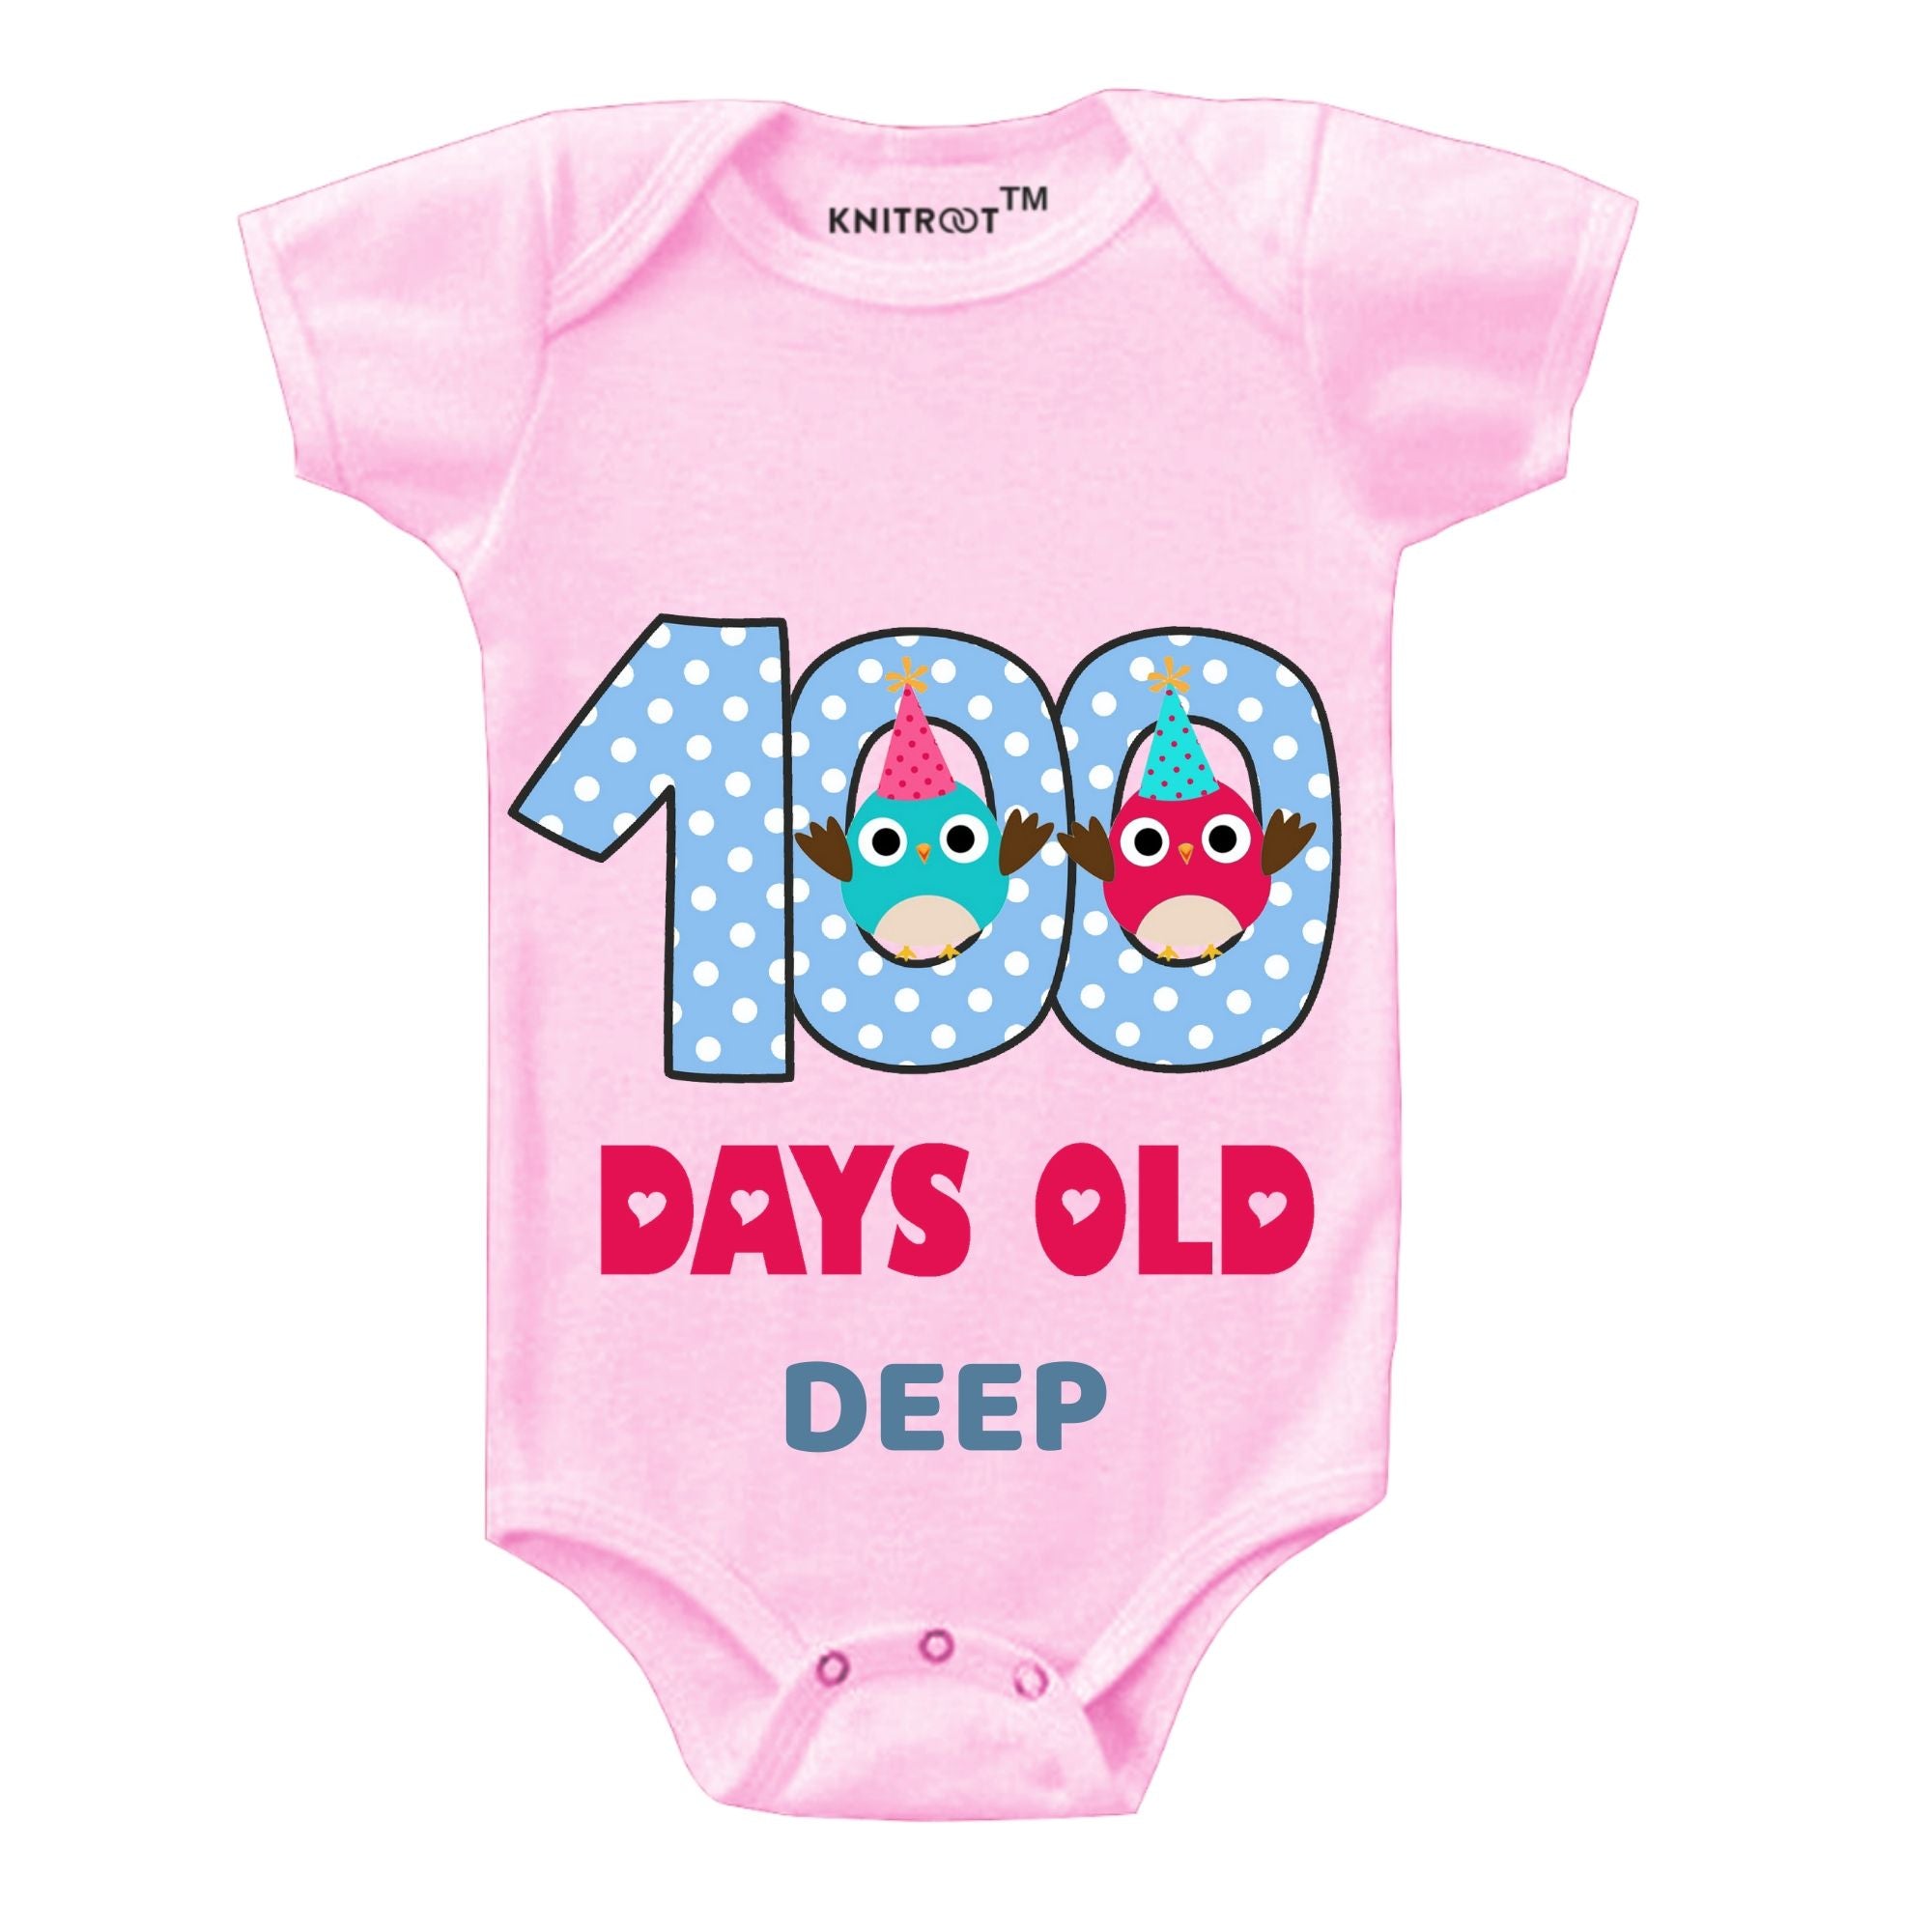 100 Days Old Onesie